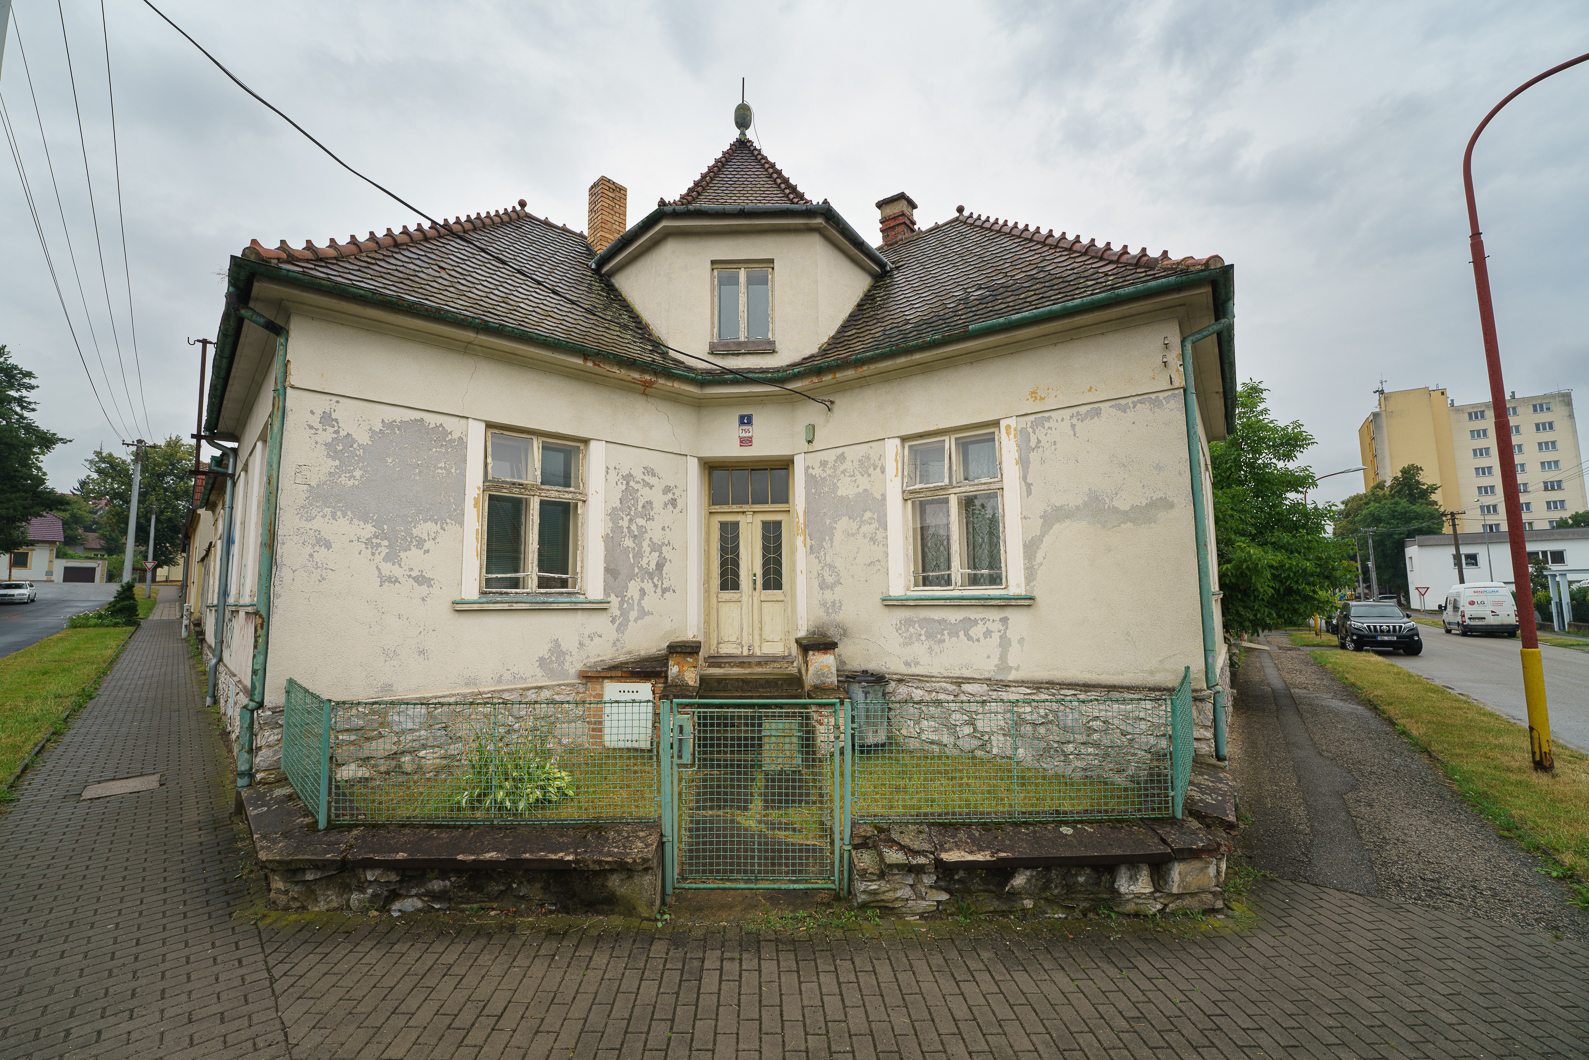 Zřejmě opuštěný a chátrající krásný dům se zahradou v Blansku